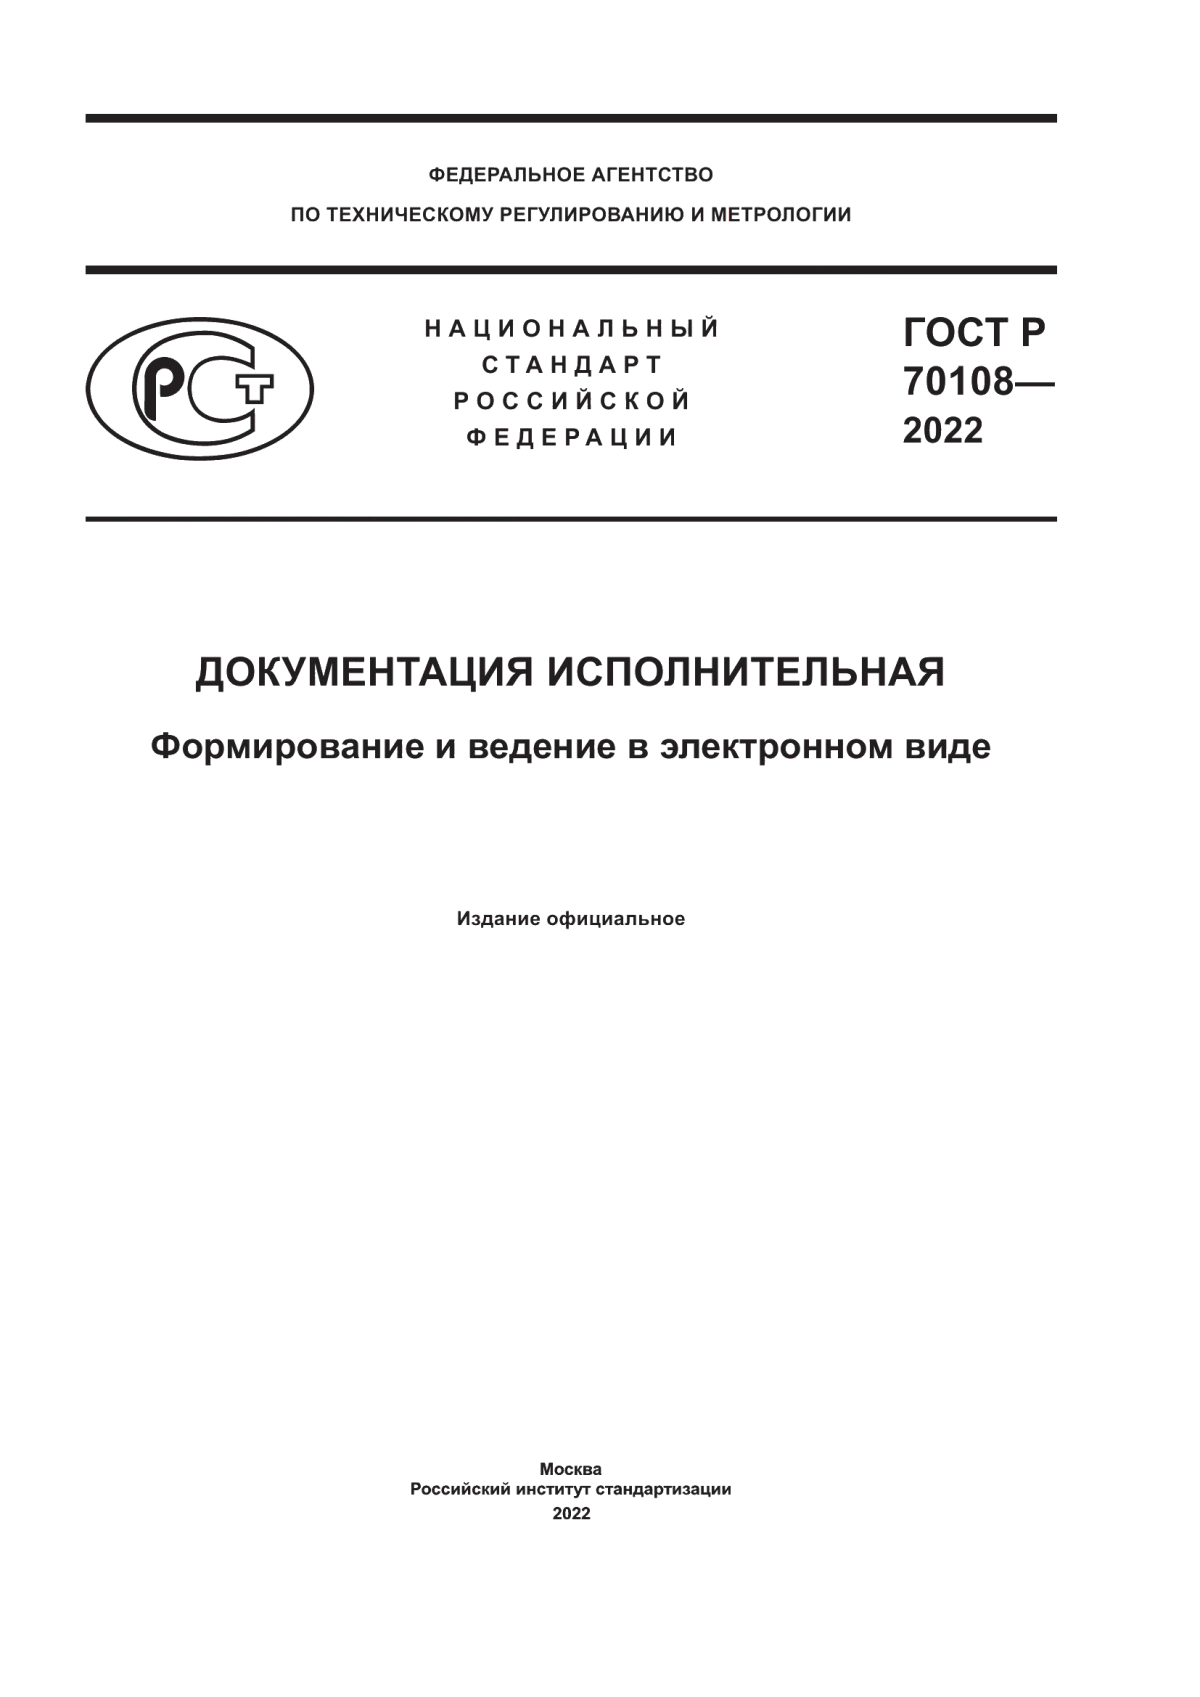 ГОСТ Р 70108-2022 Документация исполнительная. Формирование и ведение в электронном виде